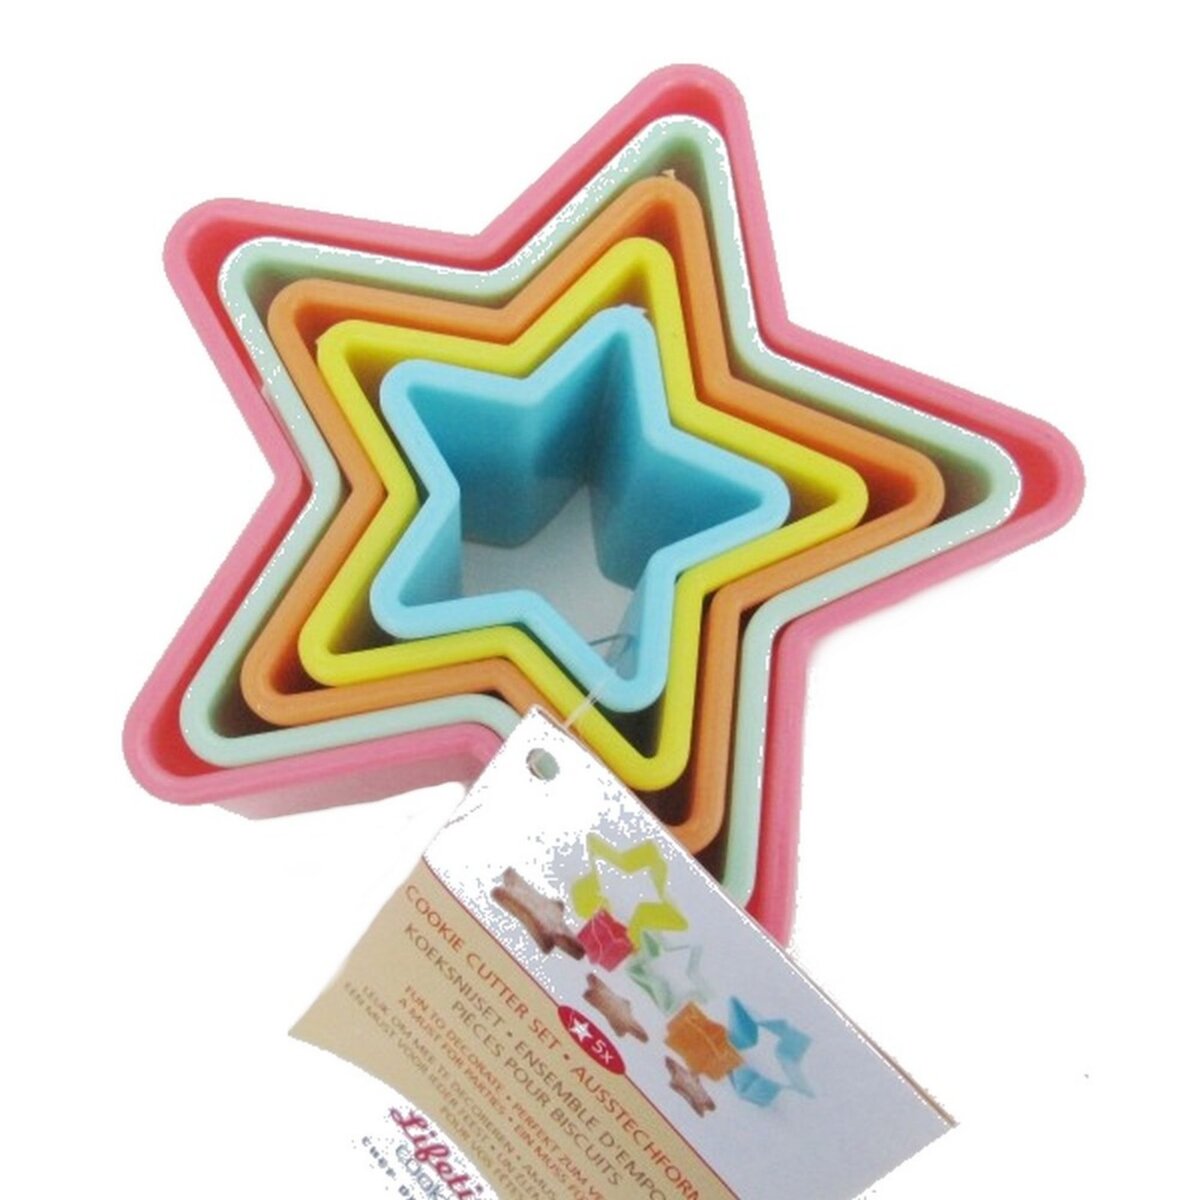 Set de 5 emporte pièces étoile gateau cookies patisserie forme plastique  pas cher 